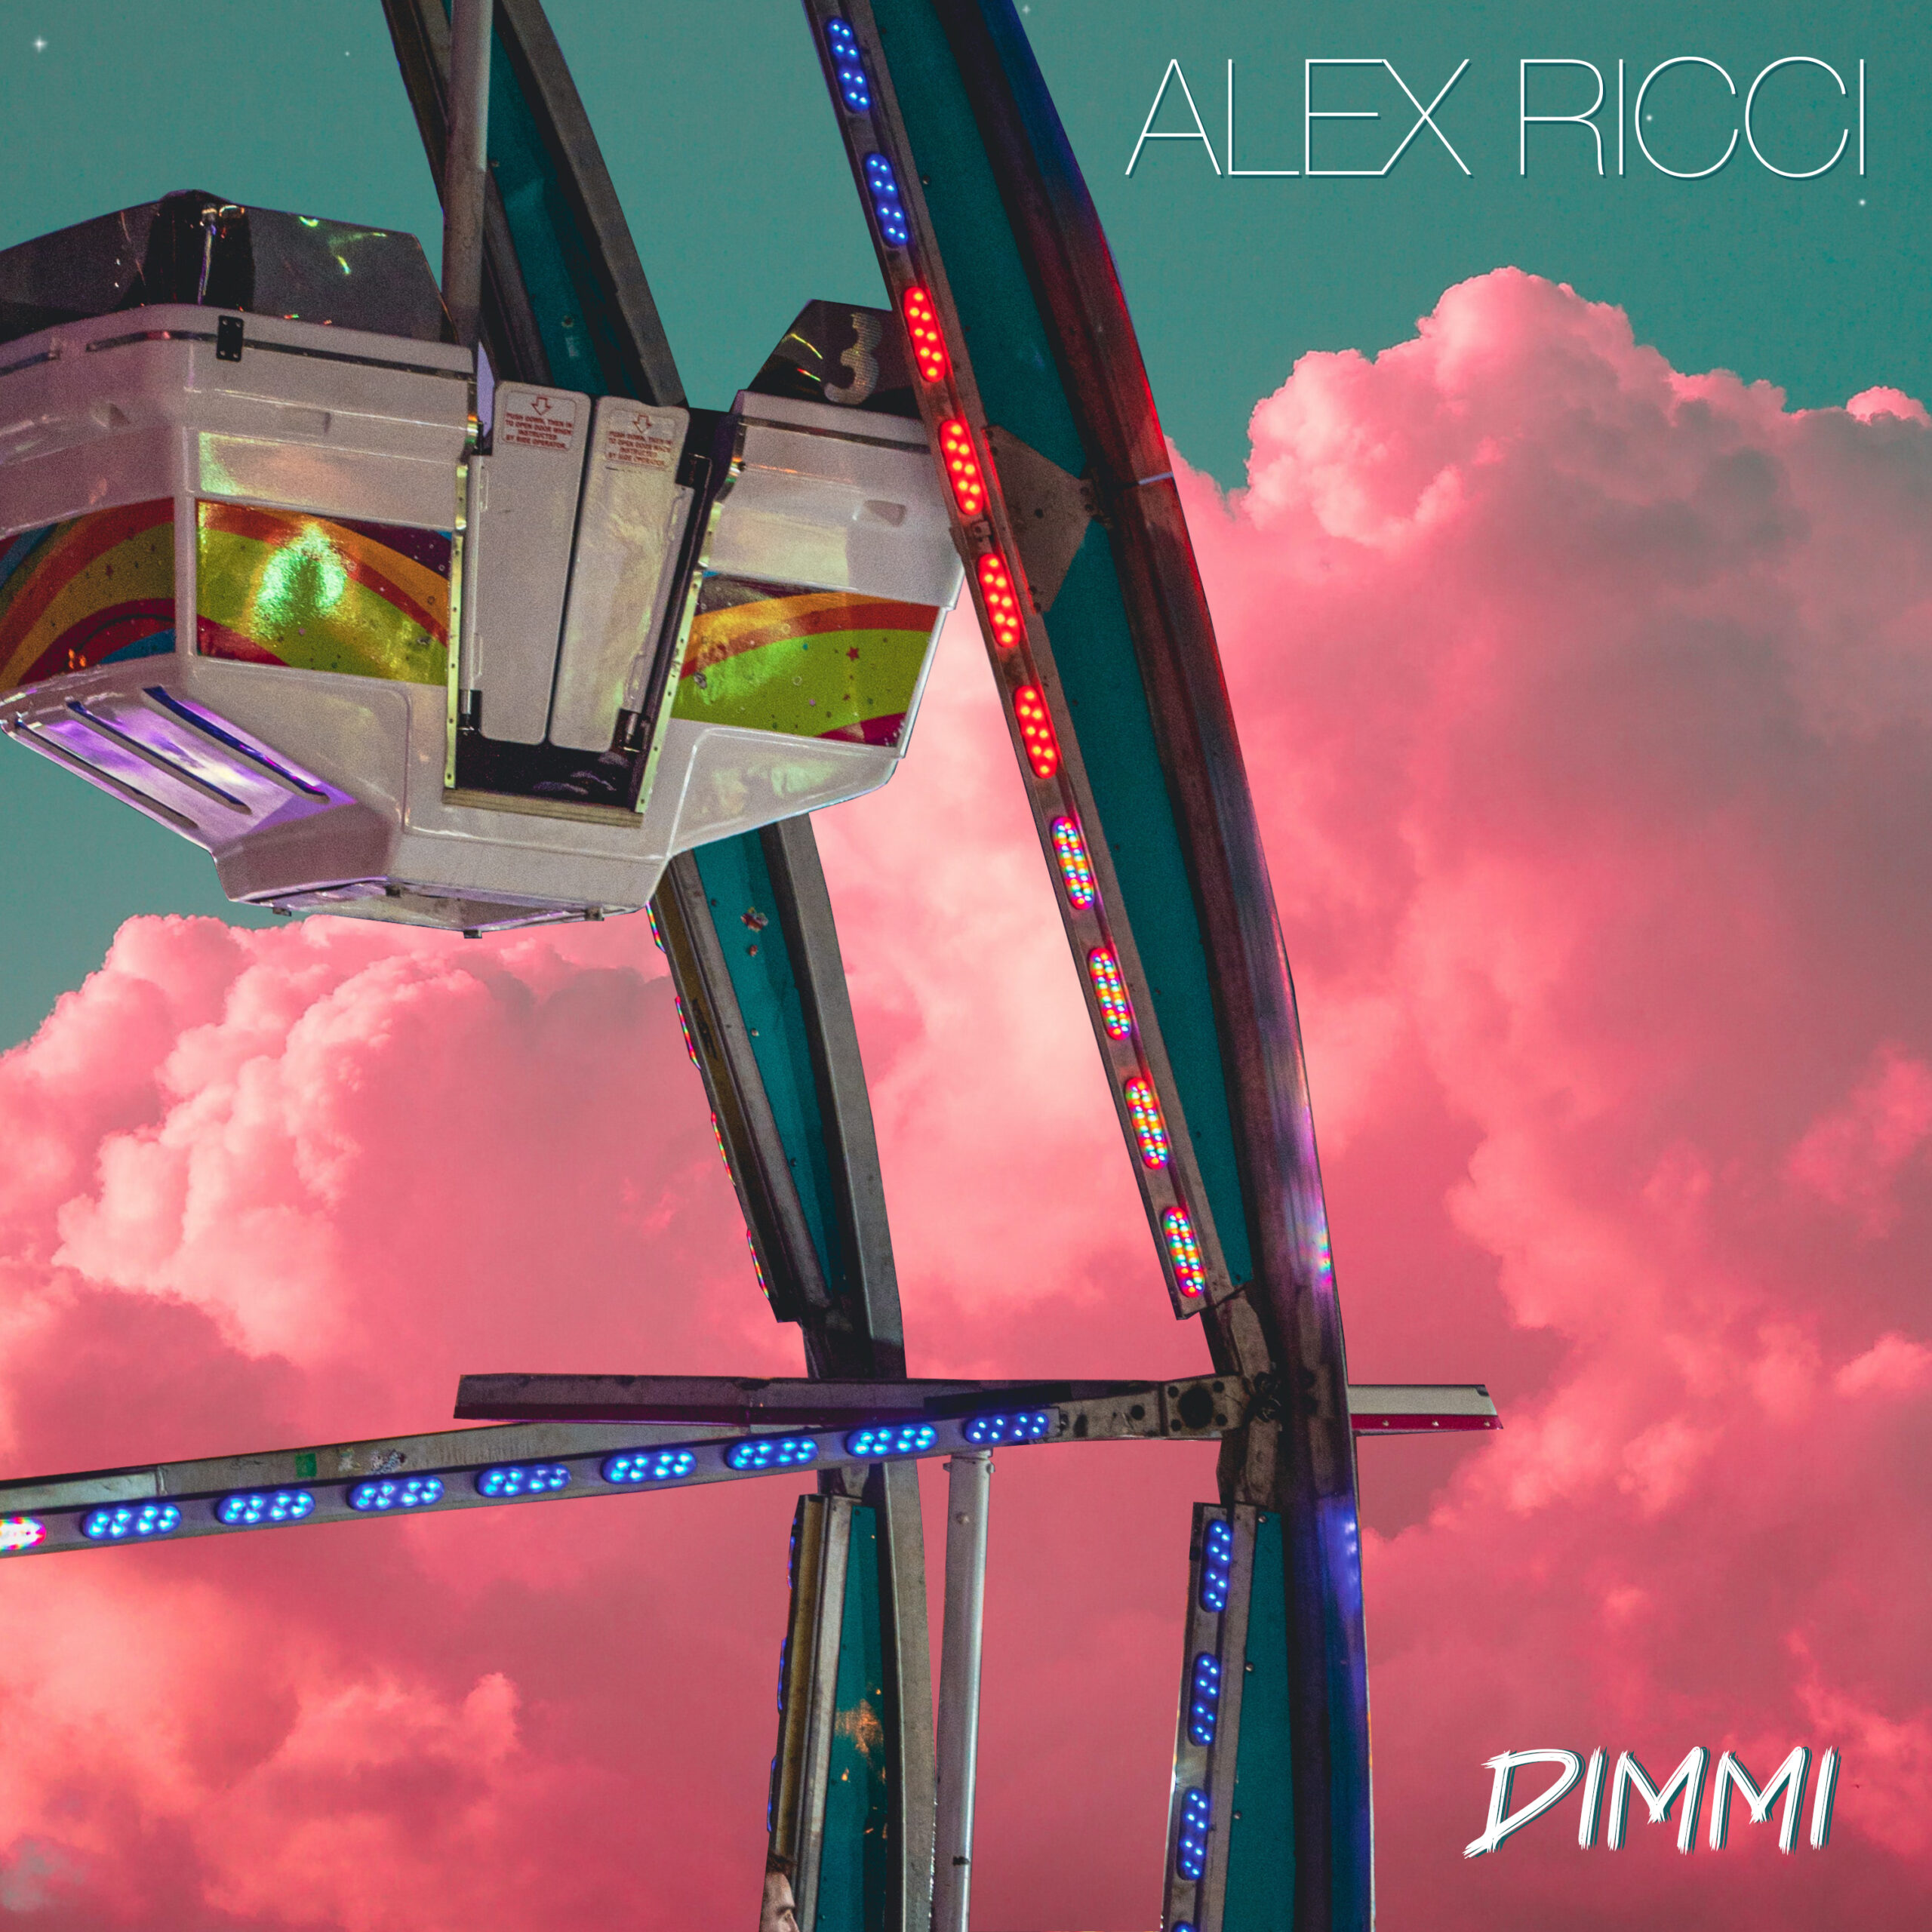 Alex Ricci pubblica il nuovo singolo “Dimmi”